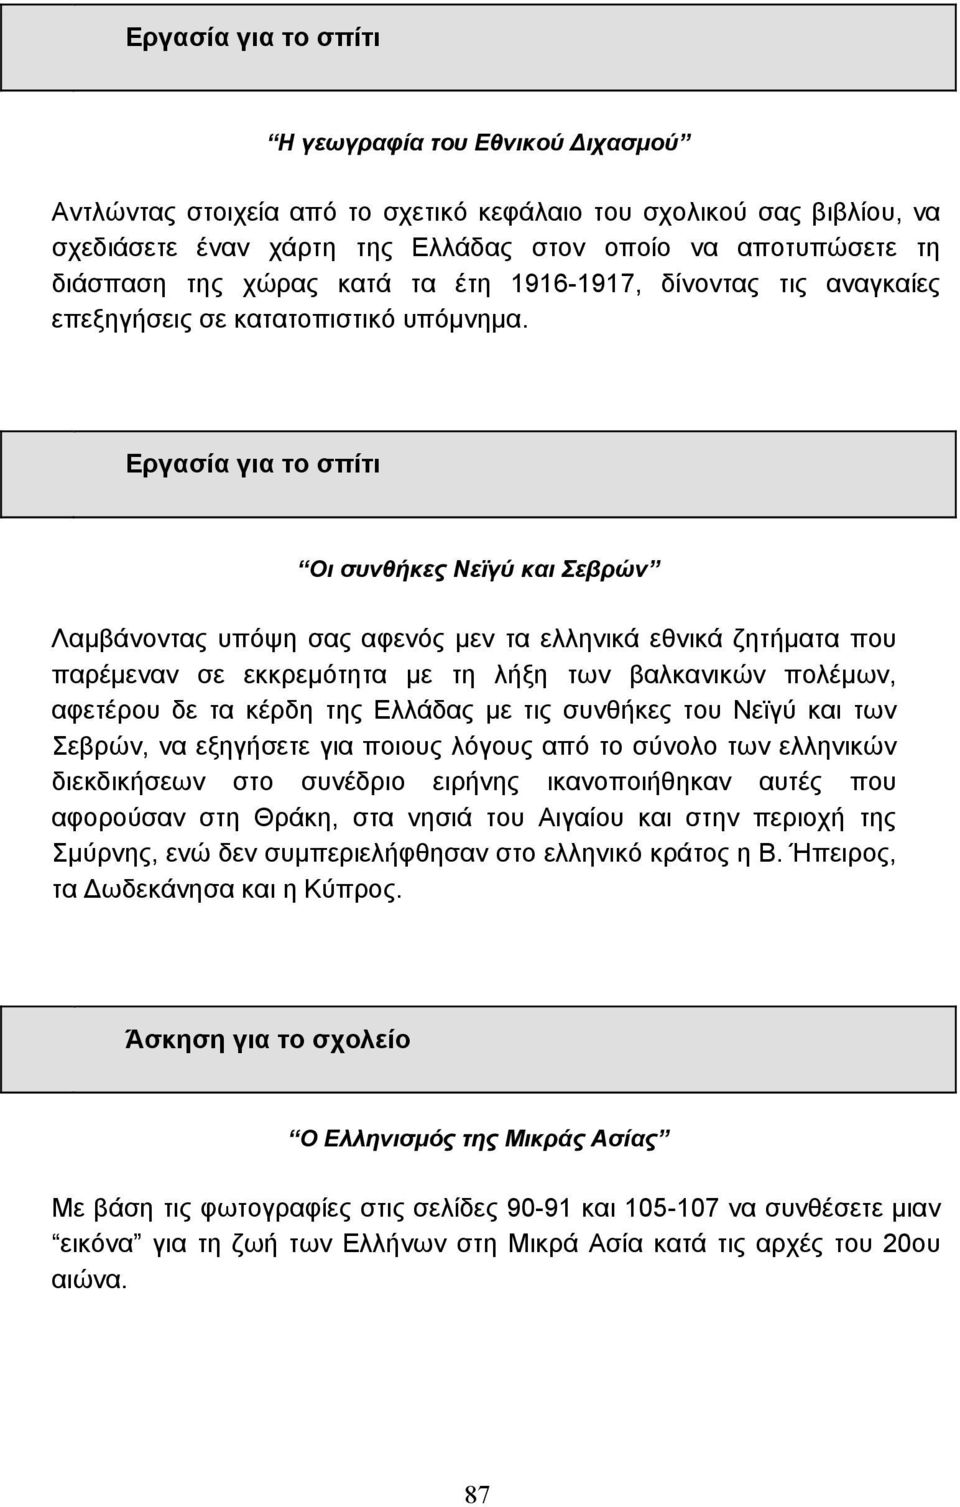 Οι συνθήκες Νεϊγύ και Σεβρών Λαµβάνοντας υπόψη σας αφενός µεν τα ελληνικά εθνικά ζητήµατα που παρέµεναν σε εκκρεµότητα µε τη λήξη των βαλκανικών πολέµων, αφετέρου δε τα κέρδη της Ελλάδας µε τις